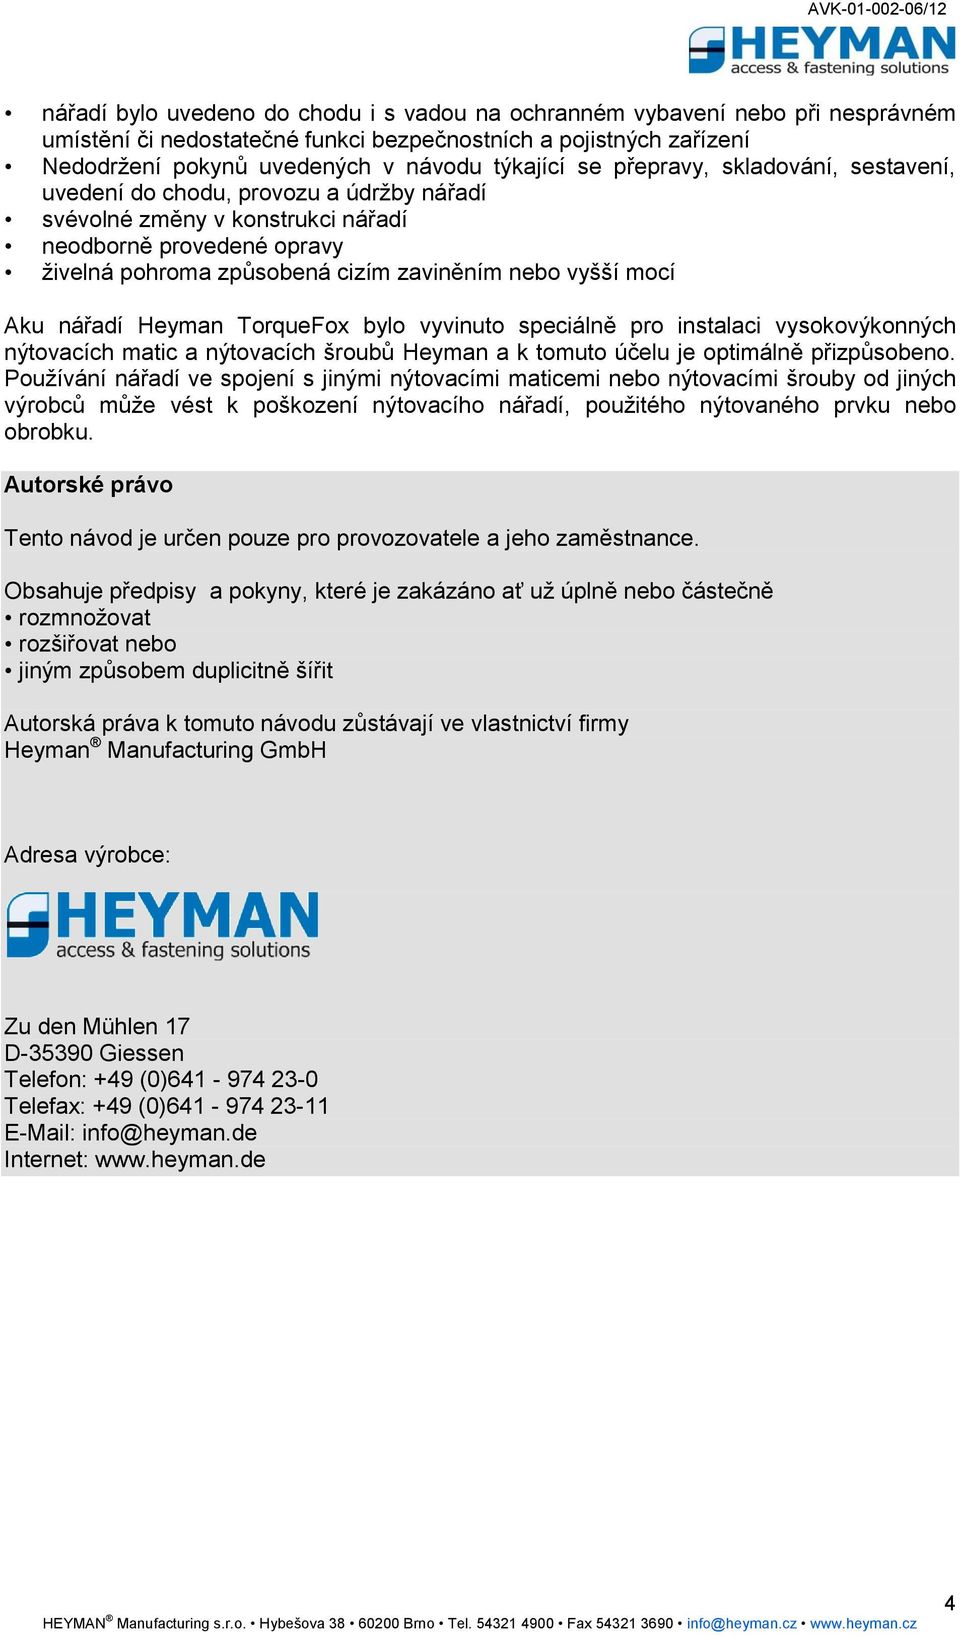 nářadí Heyman TorqueFox bylo vyvinuto speciálně pro instalaci vysokovýkonných nýtovacích matic a nýtovacích šroubů Heyman a k tomuto účelu je optimálně přizpůsobeno.